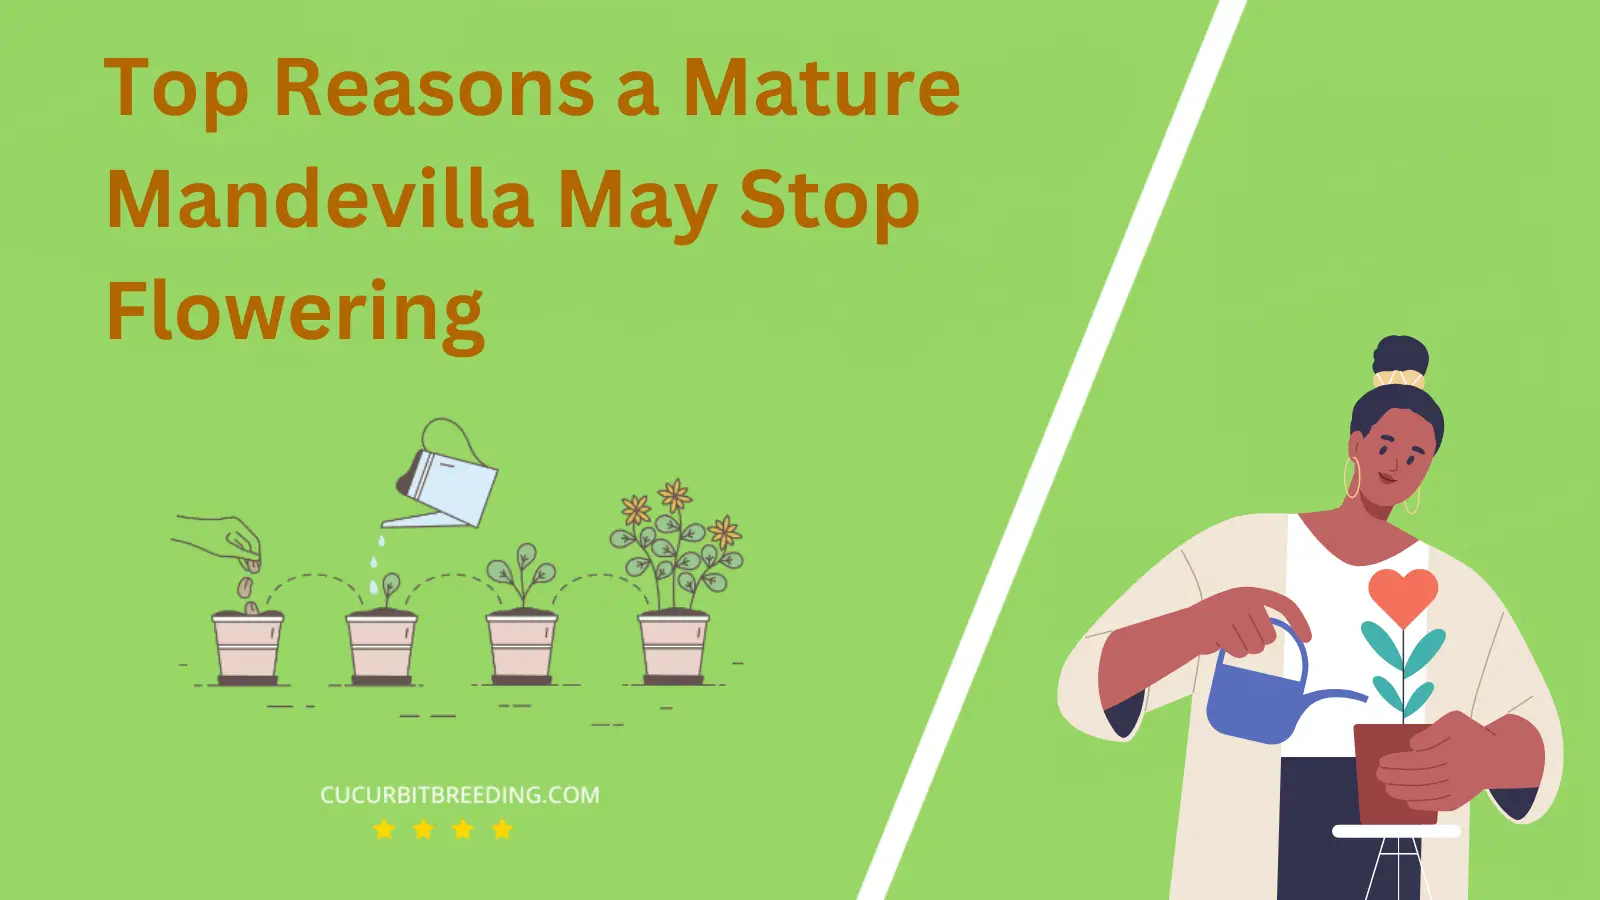 Top Reasons a Mature Mandevilla May Stop Flowering